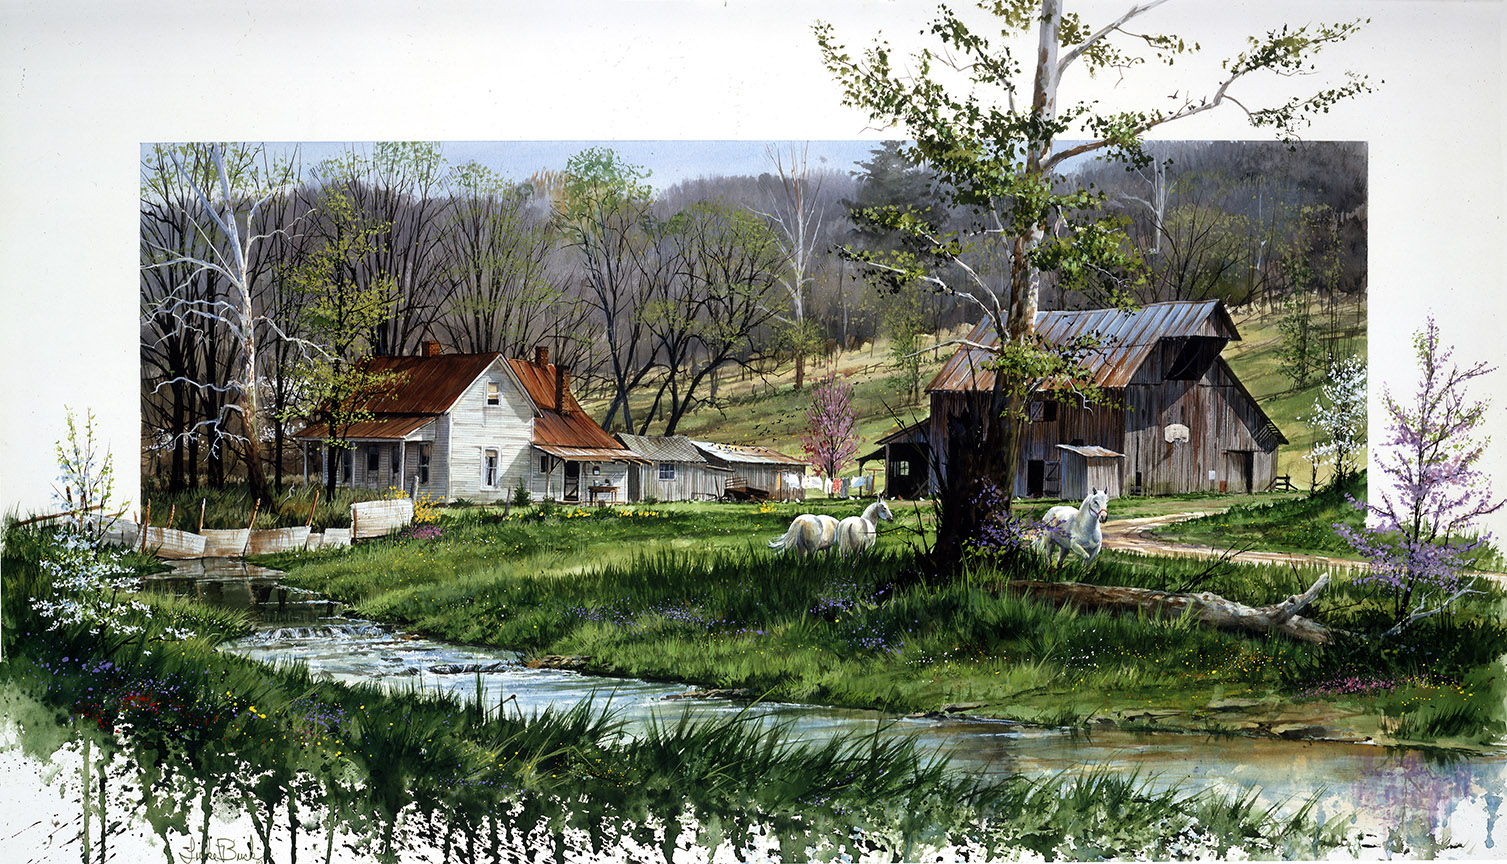 LB – Rural America – Spirit of Spring © Luke Buck